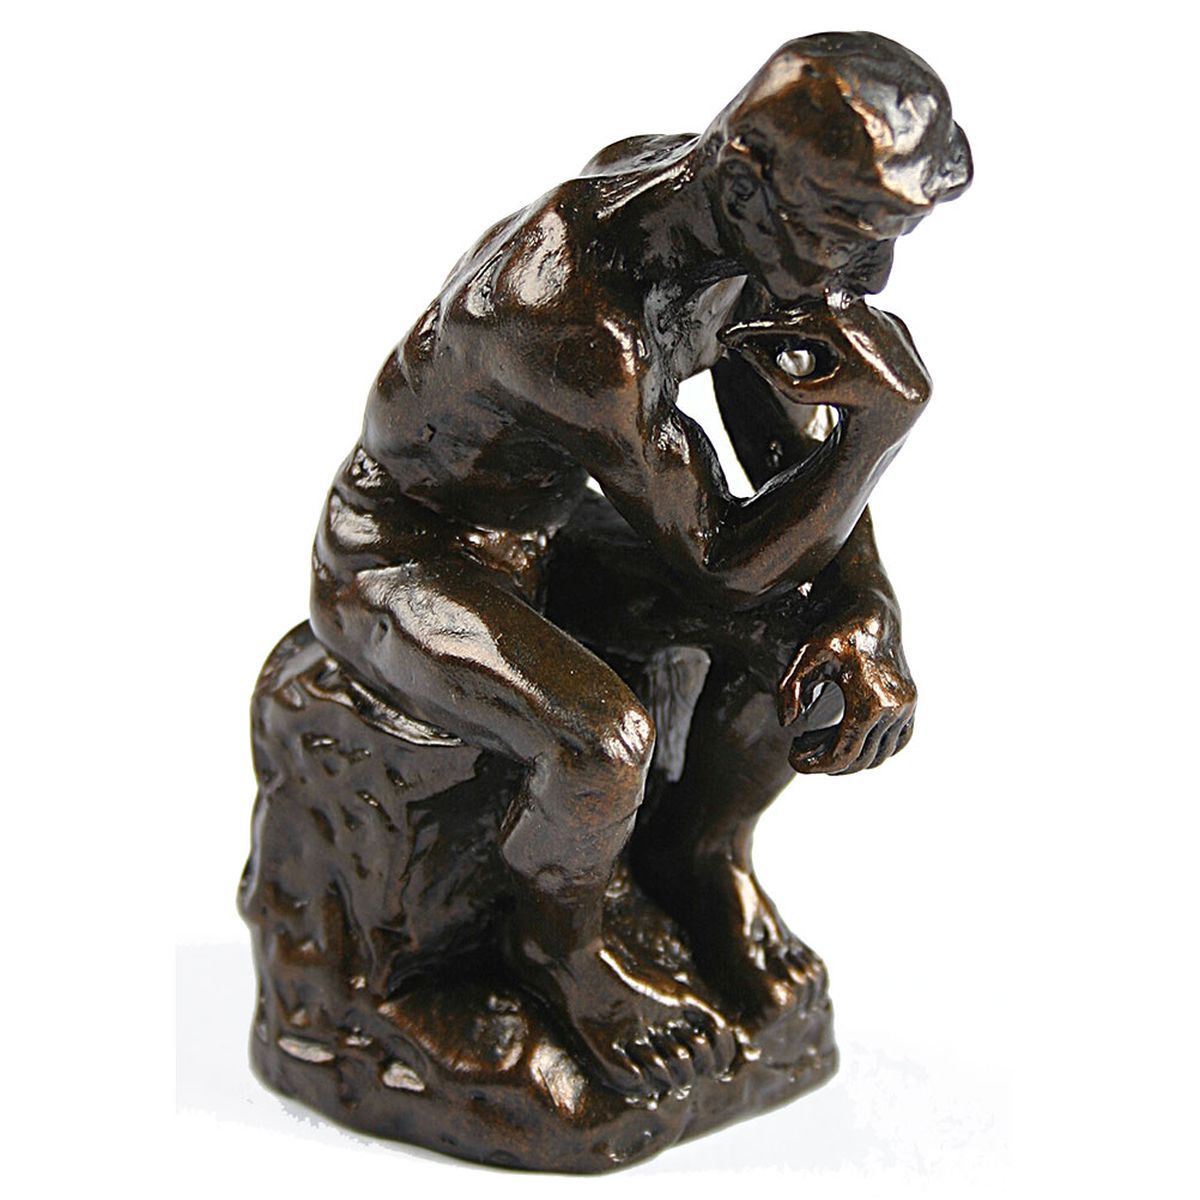 Reproduction du Penseur de Rodin - 10 cm